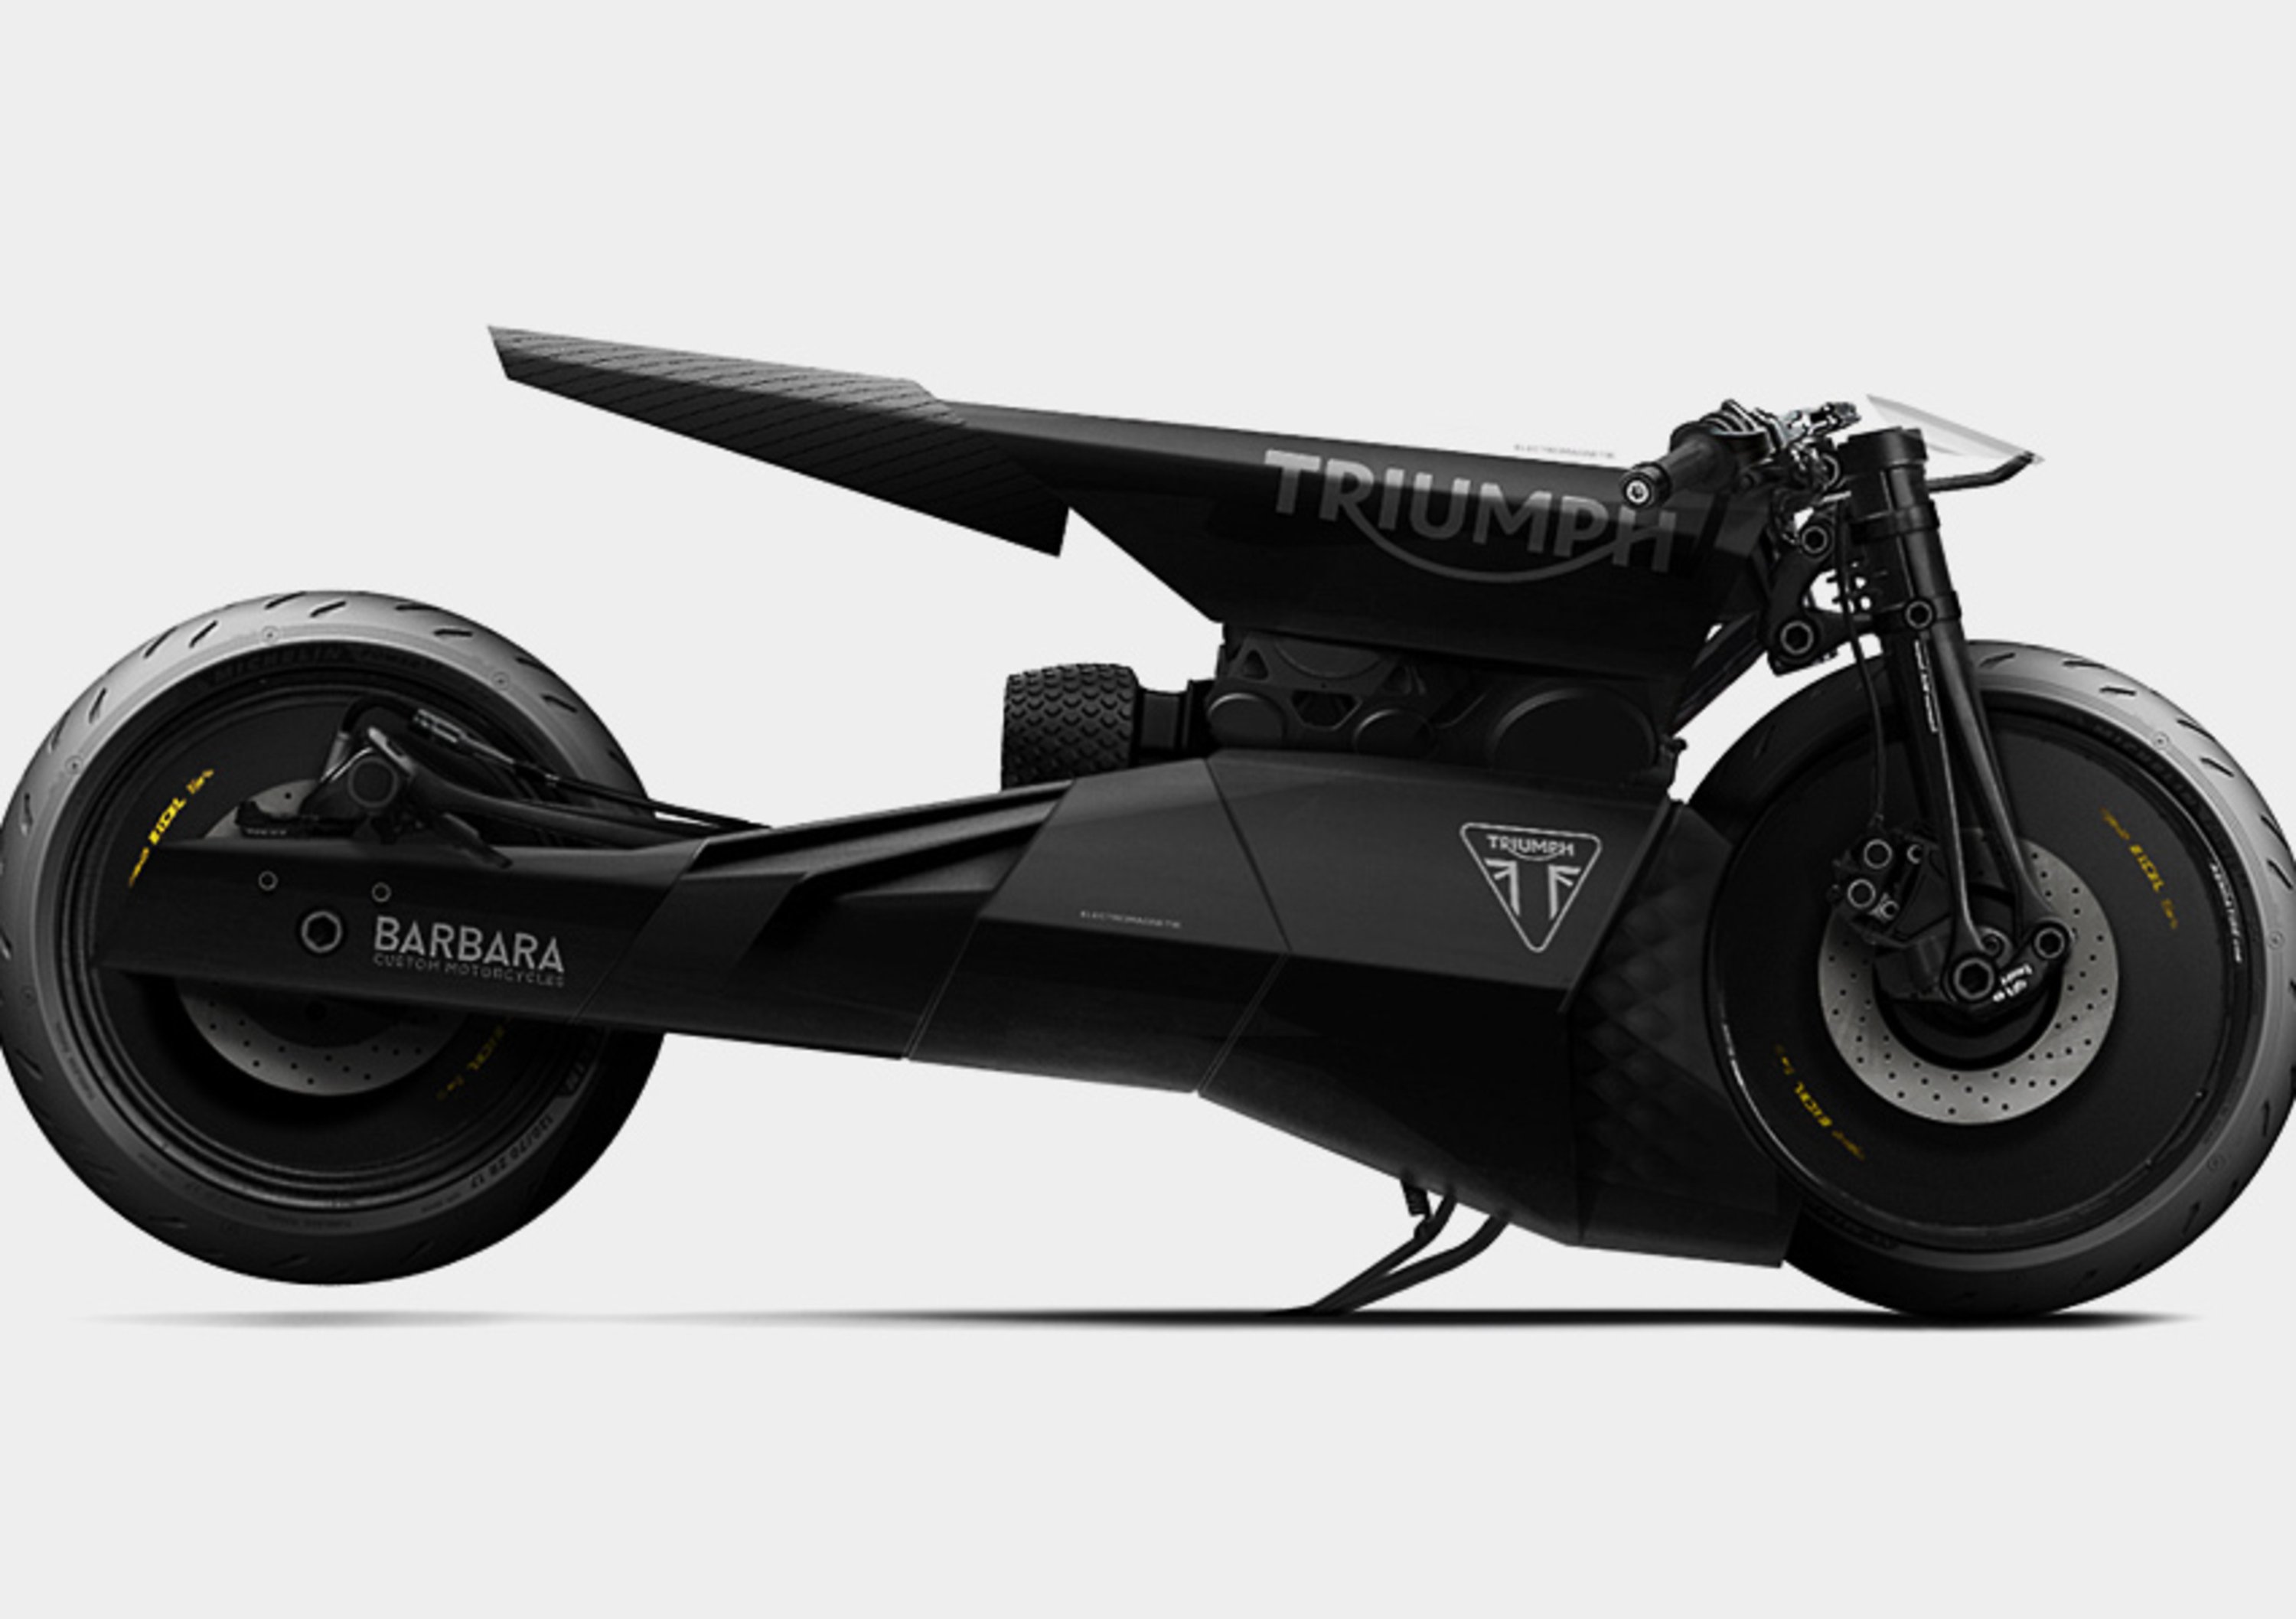 Barbara Triumph Black Matter Motorcycle, il futuro &egrave; r&eacute;tro ed elettrico